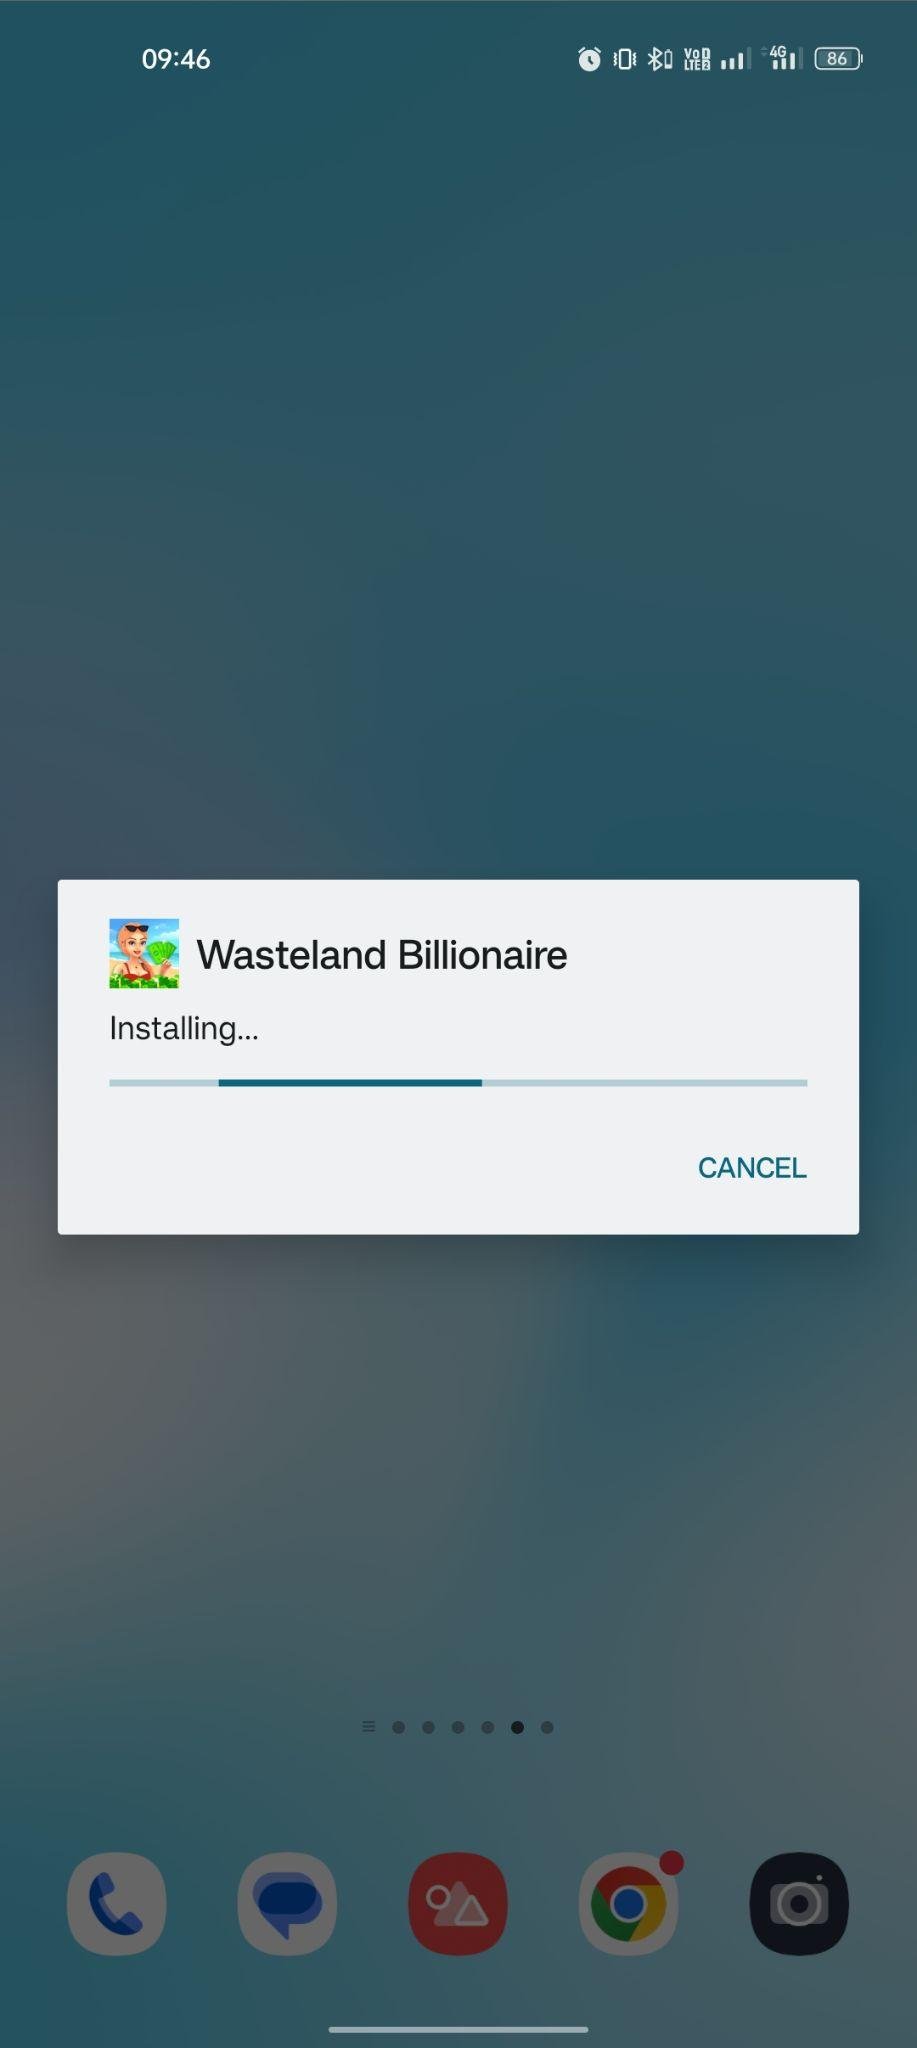 Wasteland Billionaire apk installing